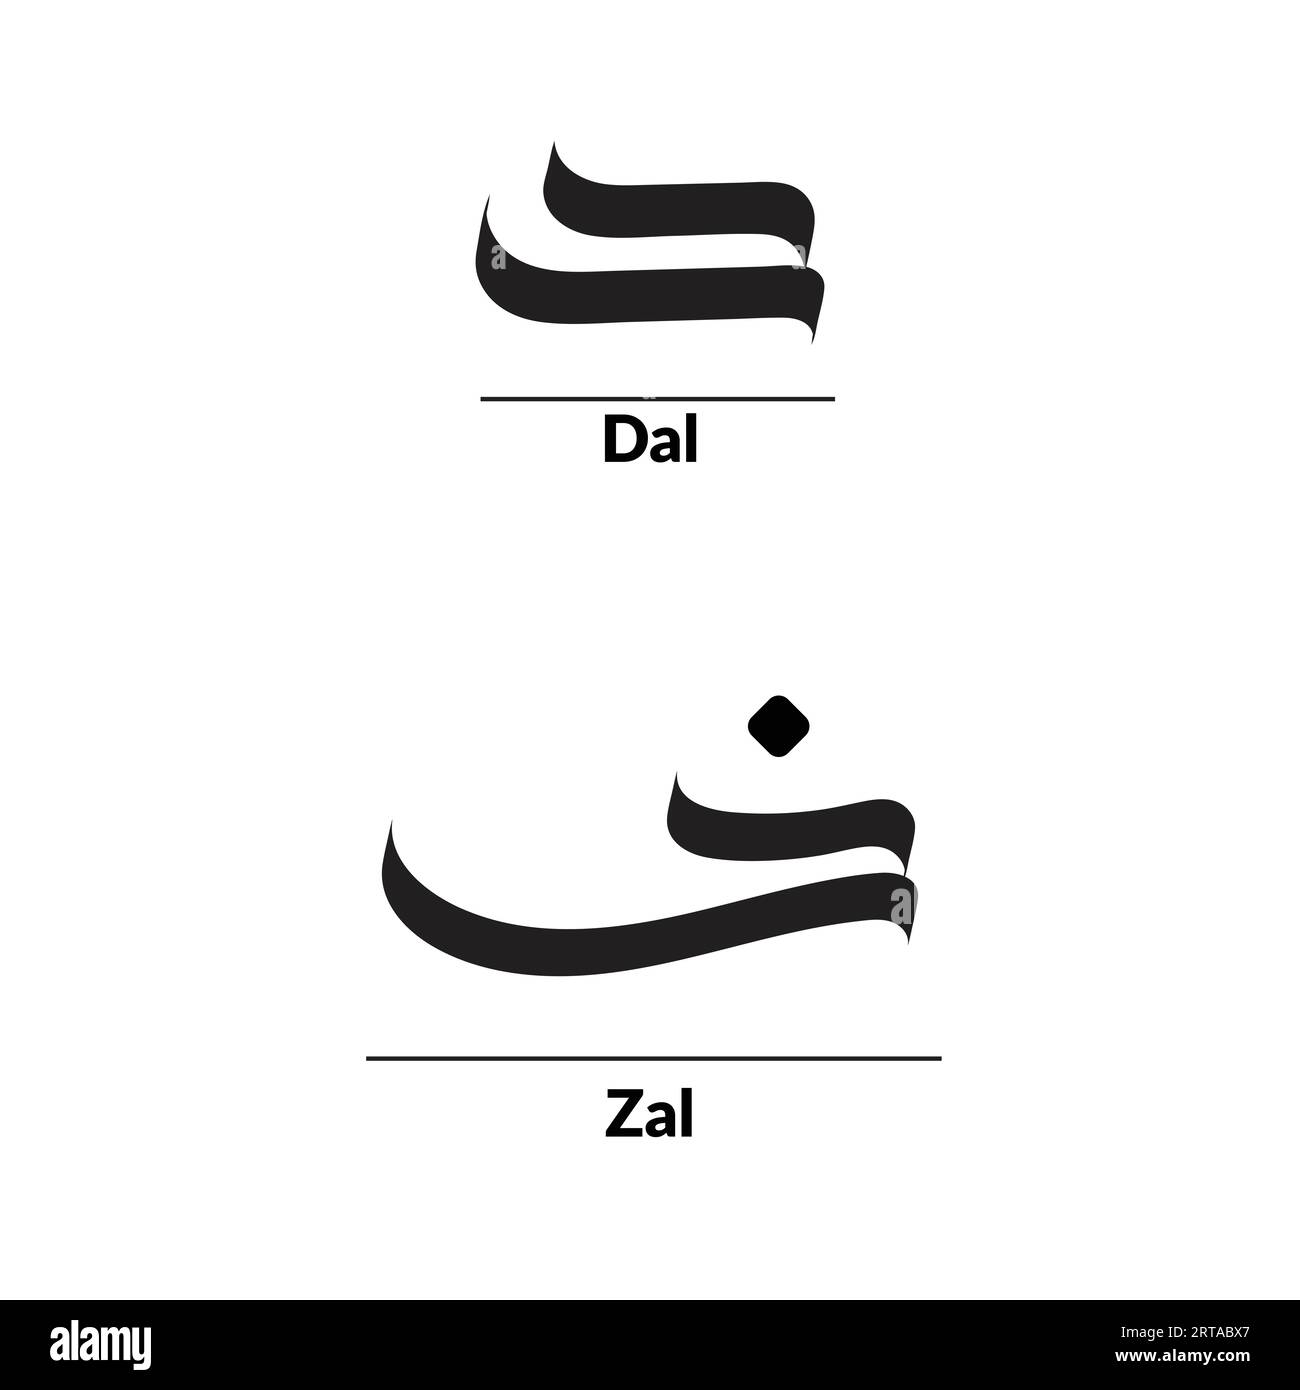 Calligrafia araba stile al-Saif, alfabeto Daal e Zal. Illustrazione Vettoriale